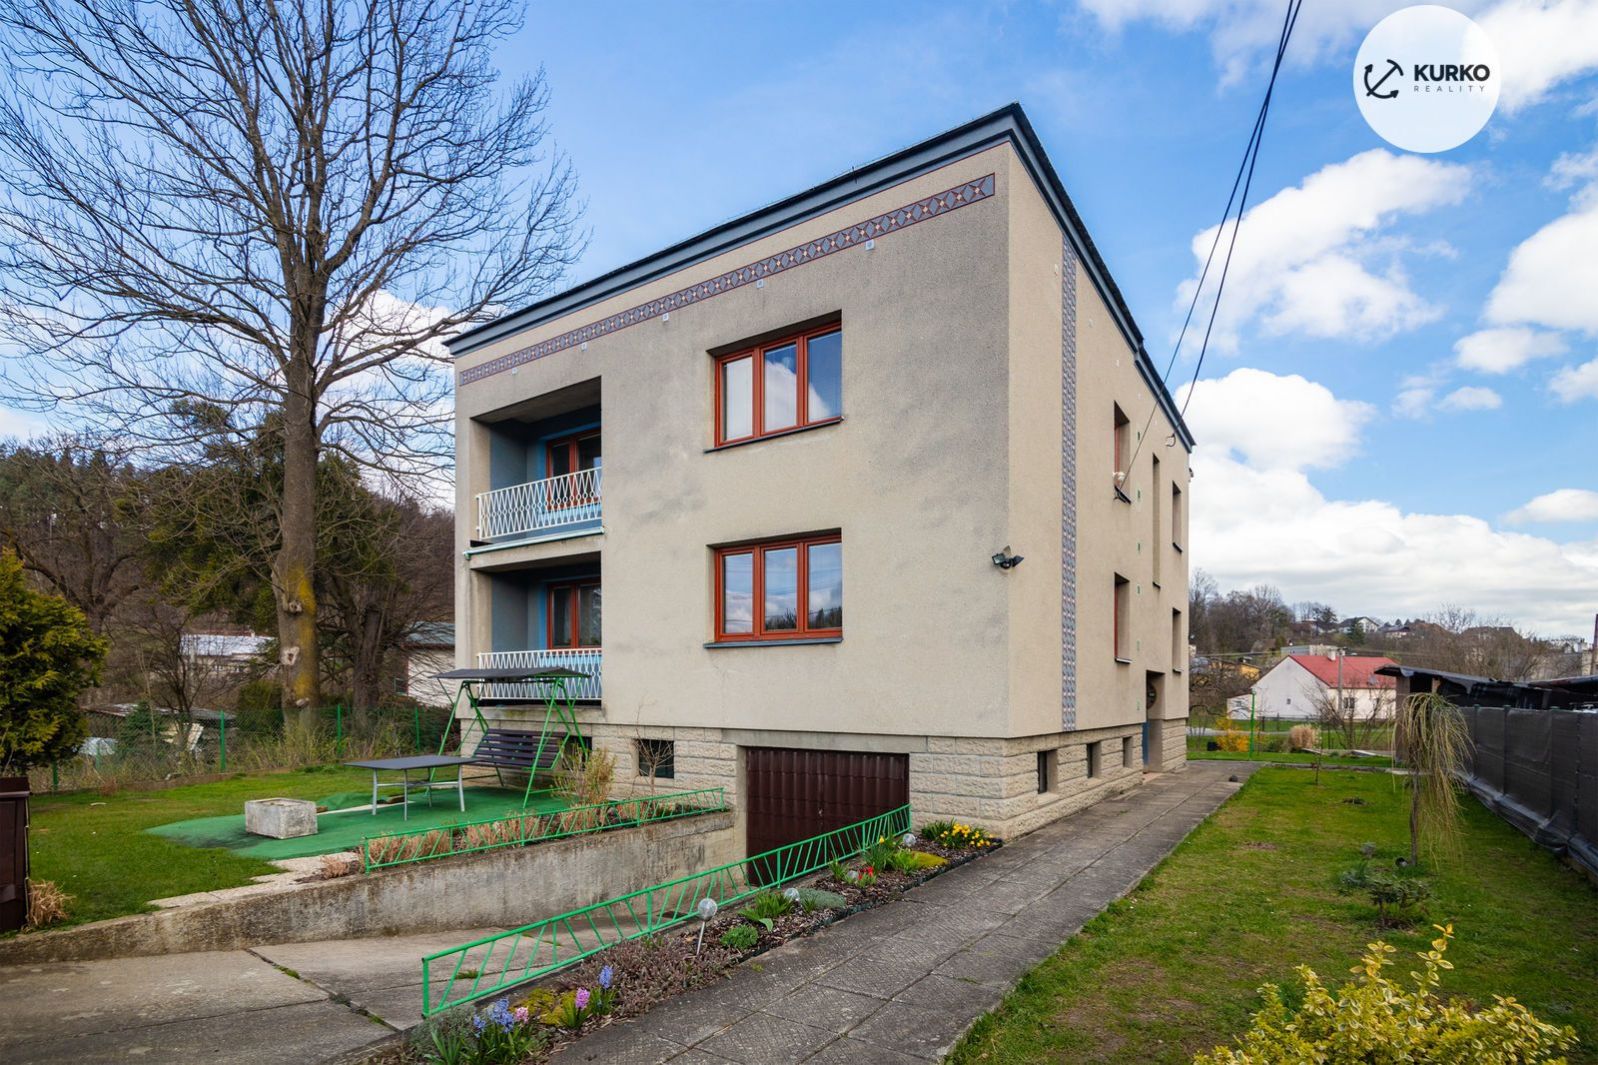 Rodinný dům o dvou bytových jednotkách 5+1 a 4+1 na pozemku 769 m2 v centru obce Janovice, obrázek č. 1